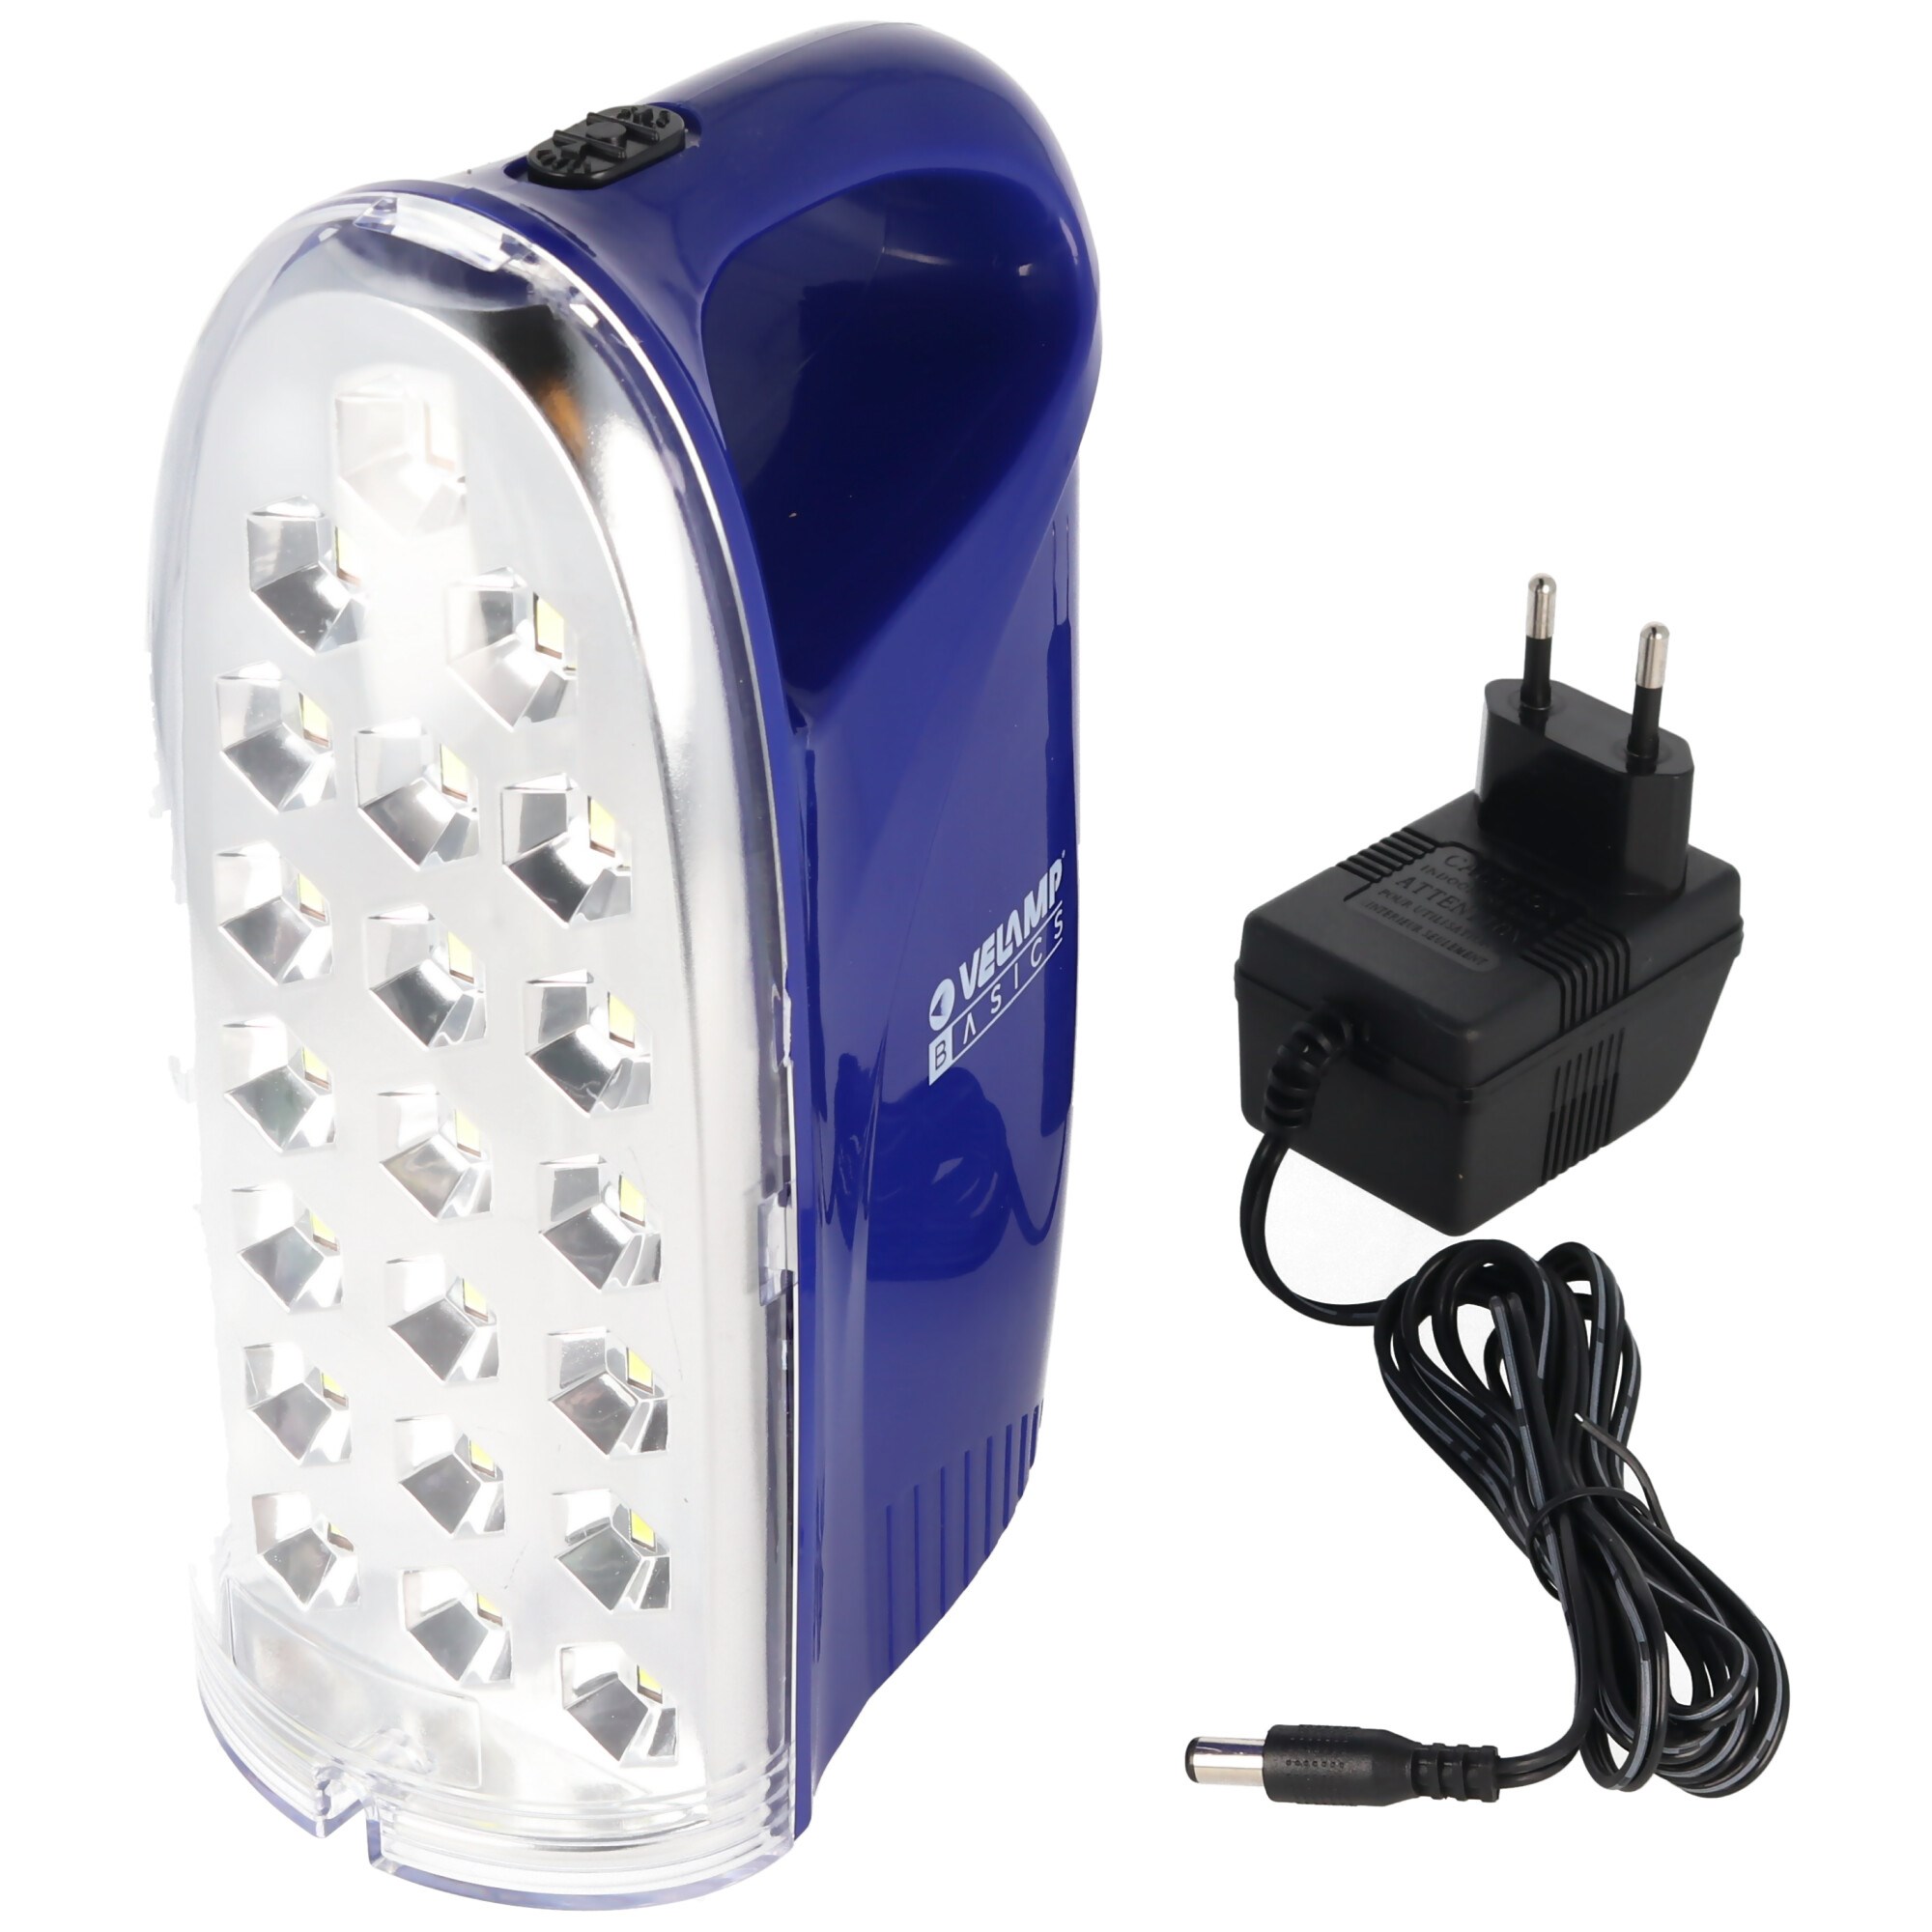 IR312 LED lamba Anti Black Out, harici şarj cihazlı taşınabilir şarj  edilebilir acil durum ışığı, 250